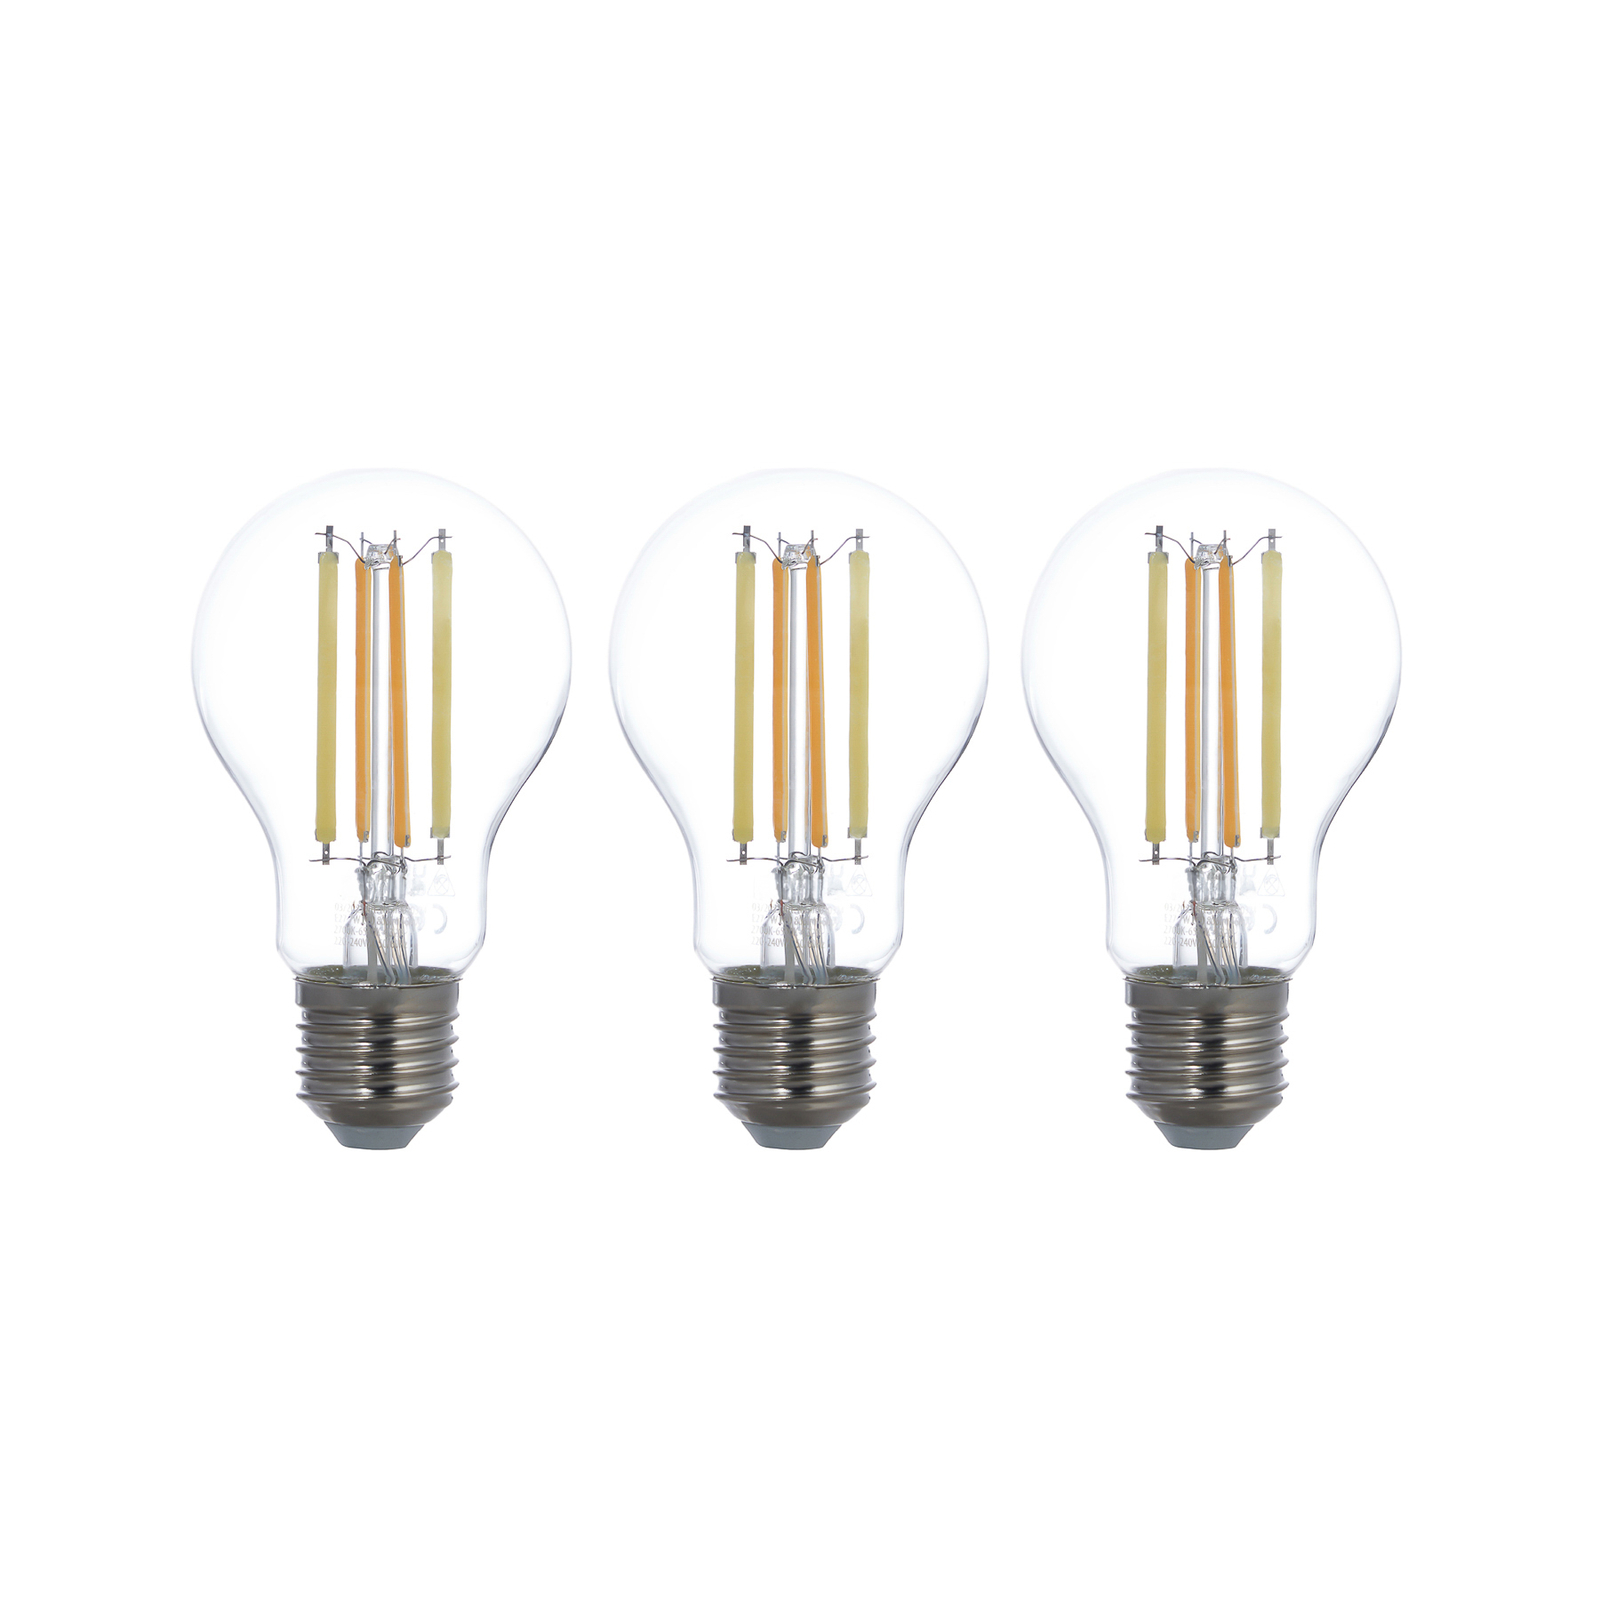 LUUMR Smart LED, E27, 7W, ZigBee, Tuya, Philips Hue, set of 3